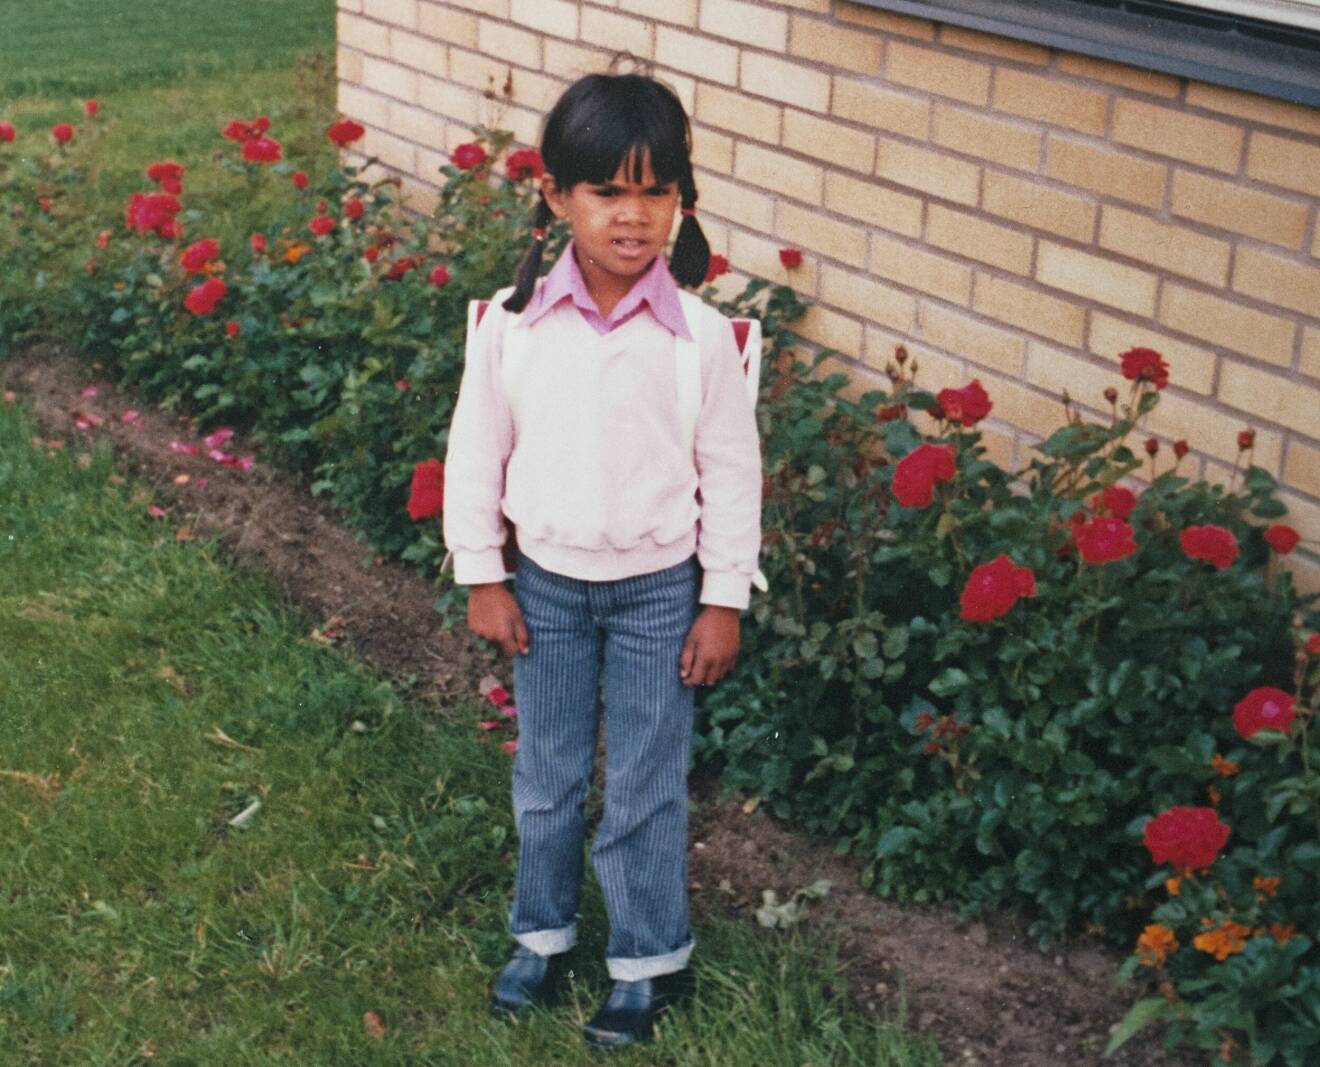 Meénakshi kom till Sverige som adoptivbarn när hon var 2,5 år och hon står i trädgården framför rosenrabatten intill villan